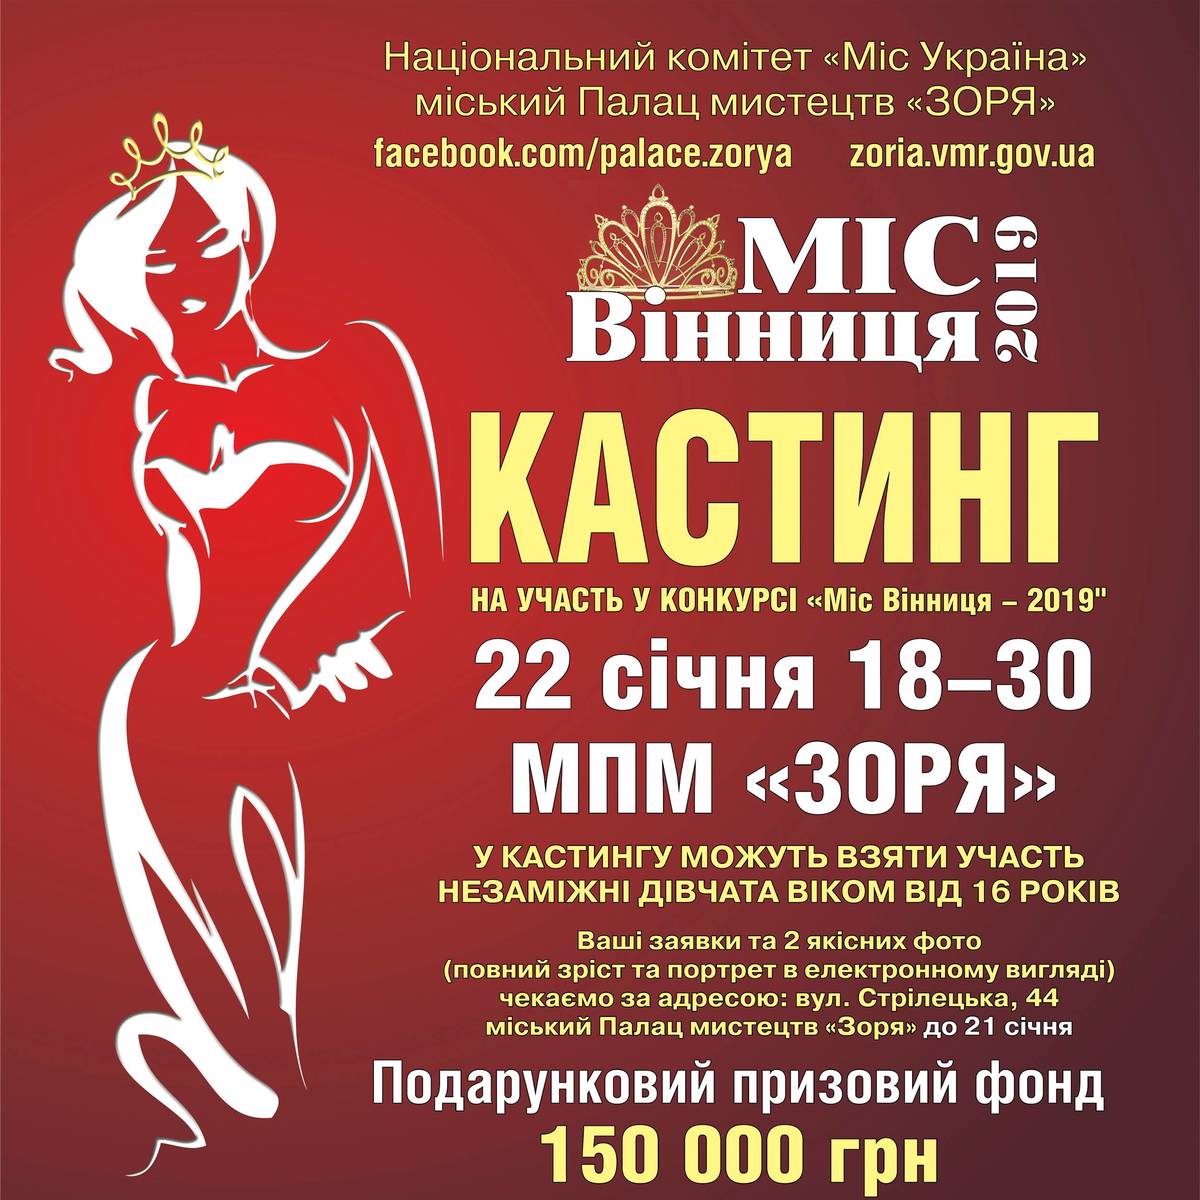 Кастинг на участь у конкурсі "Міс Вінниця - 2019"